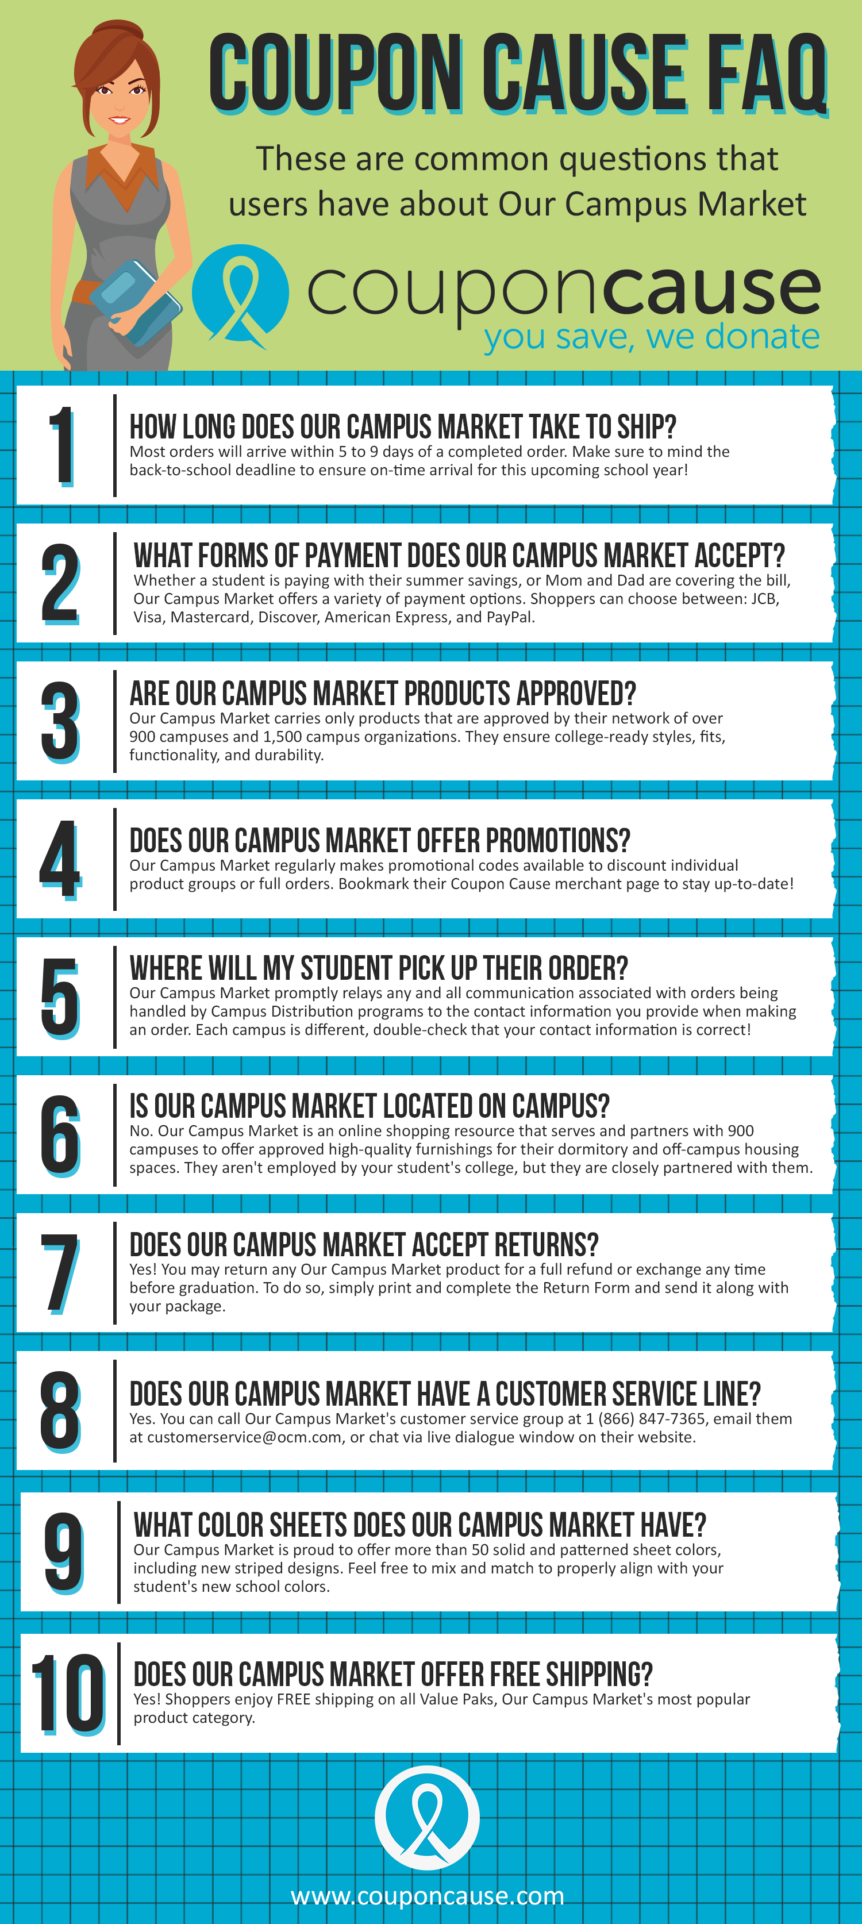 Our Campus Market Coupon Cause FAQ (C.C. FAQ)